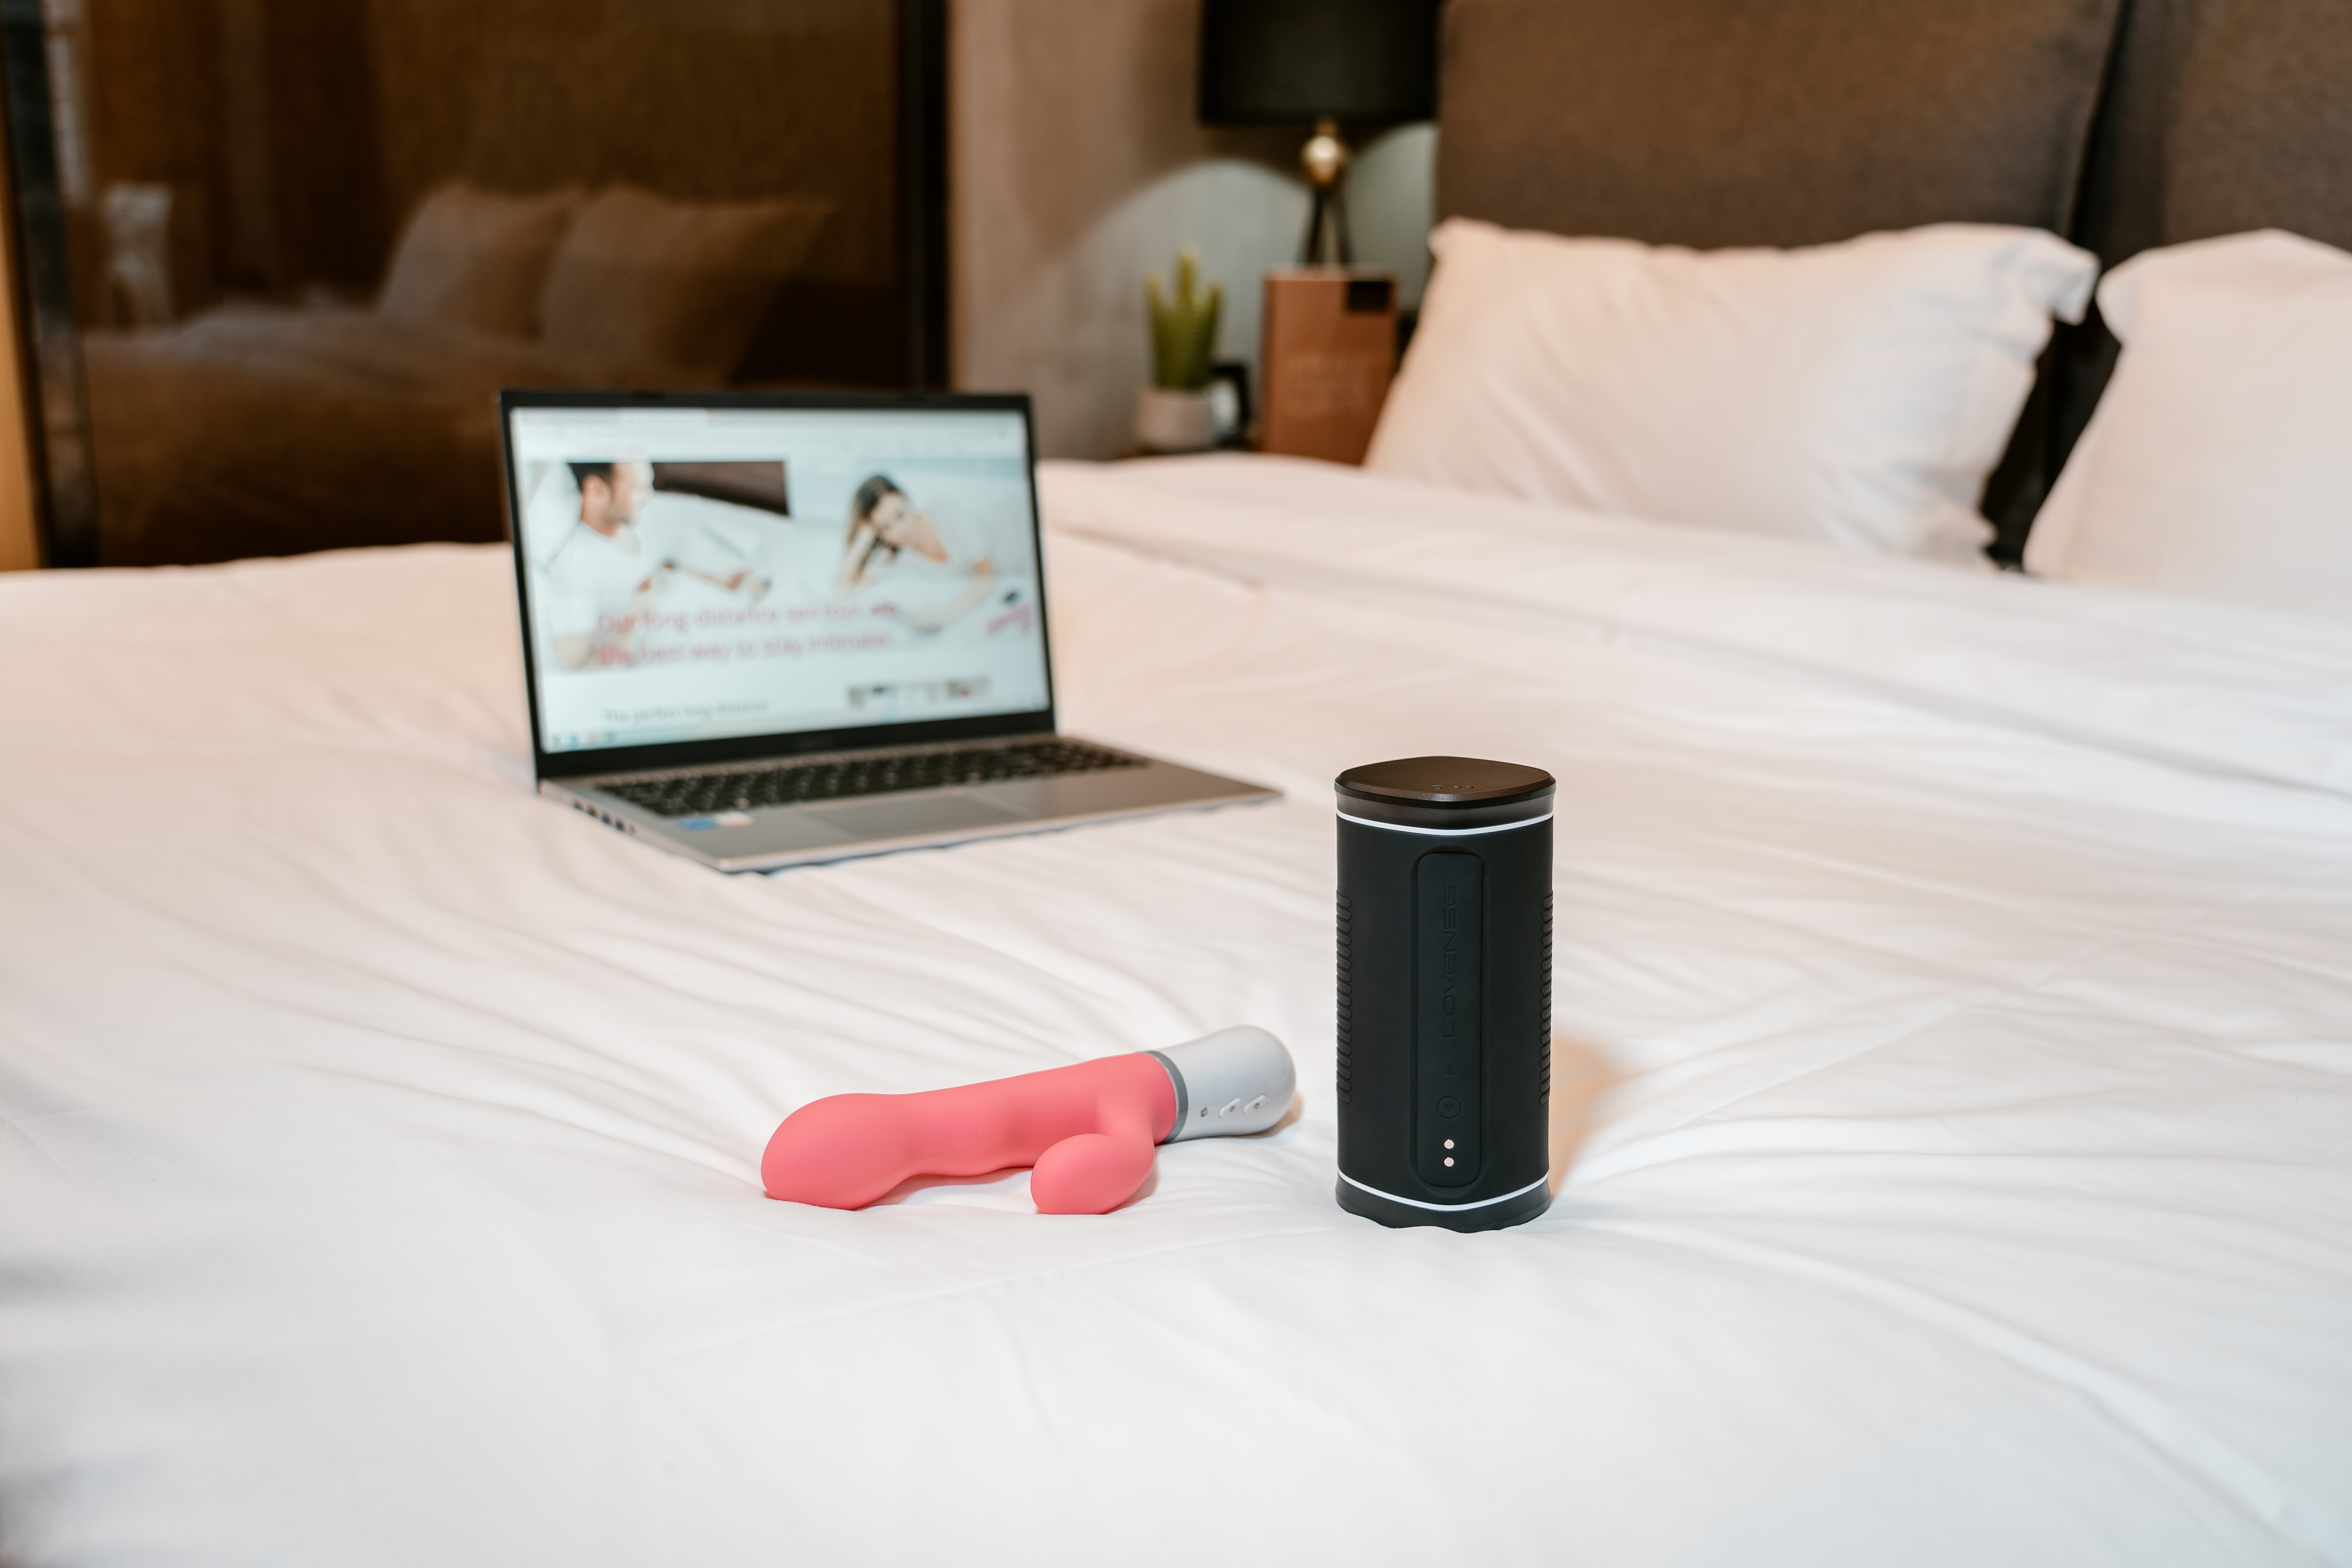 Die Bluetooth-gesteuerten Sexspielzeuge Nora und Calor und ein Laptop auf einem Bett.